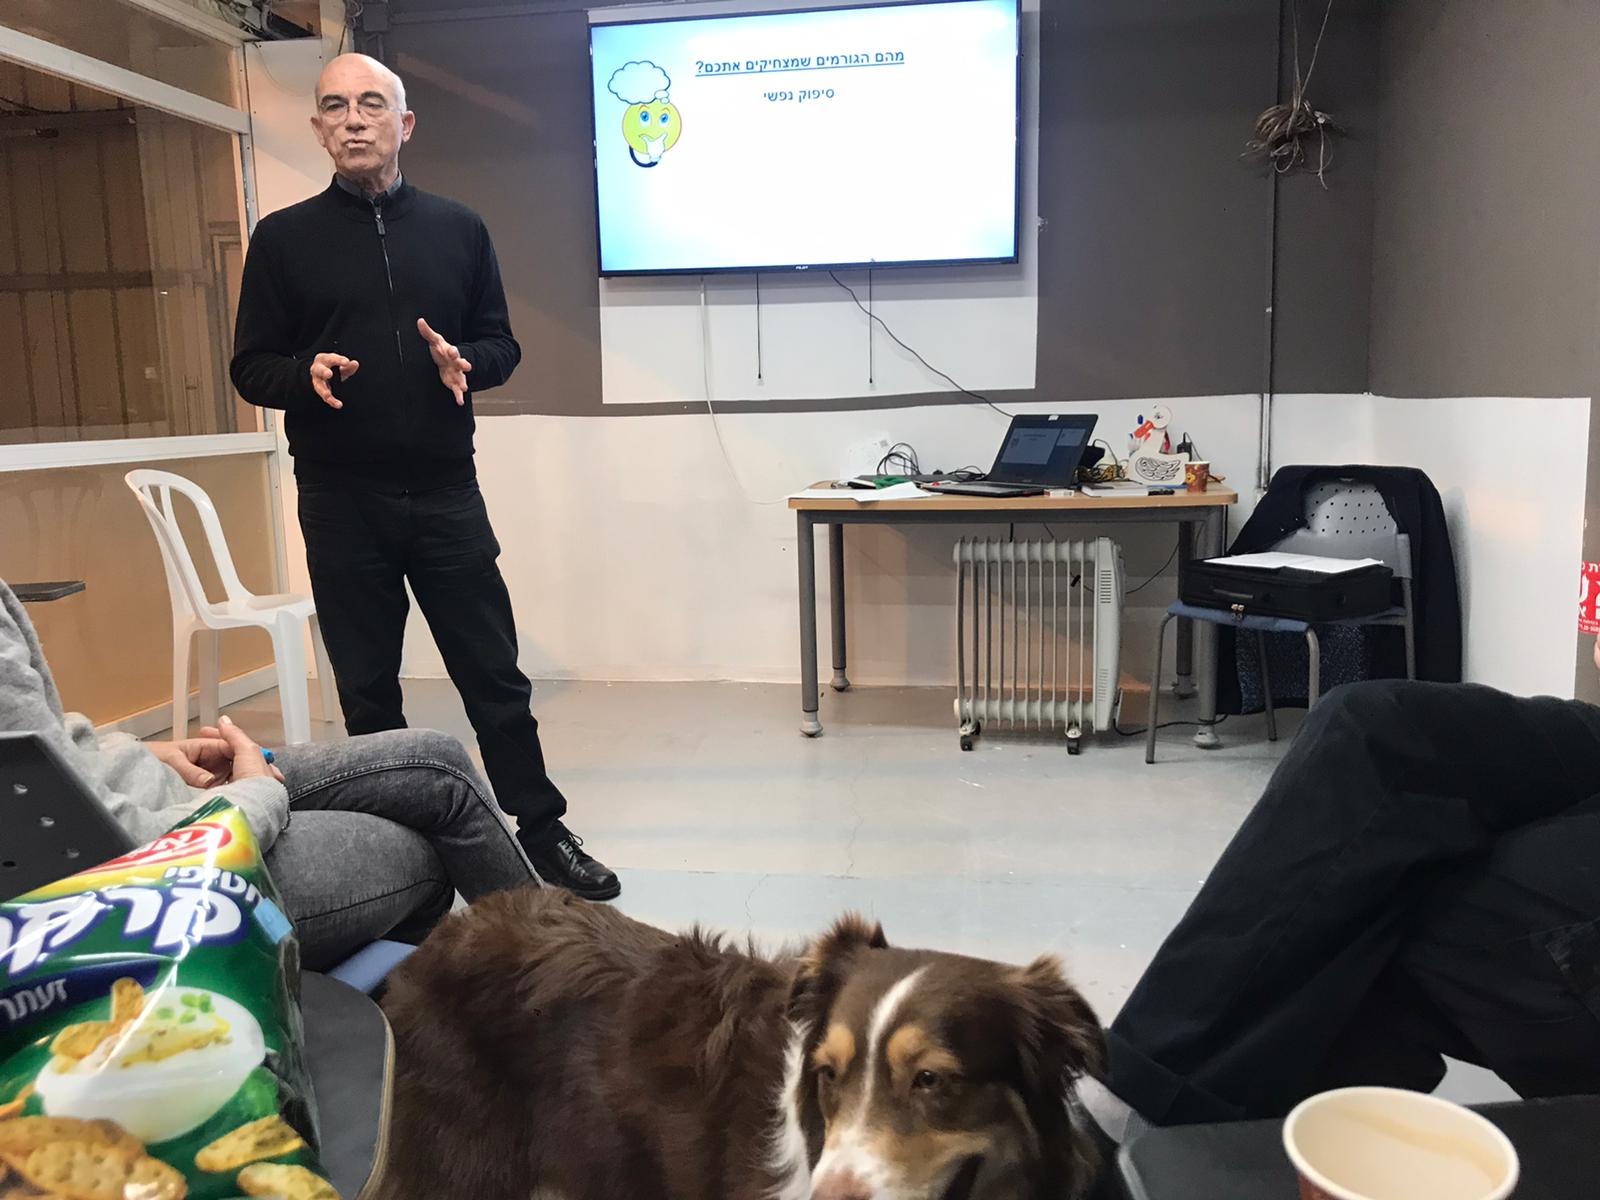 הרצאה על הומור וצחוק לגיבוש חברתי בעמותה לטיפול בילדים באמצעות כלבים